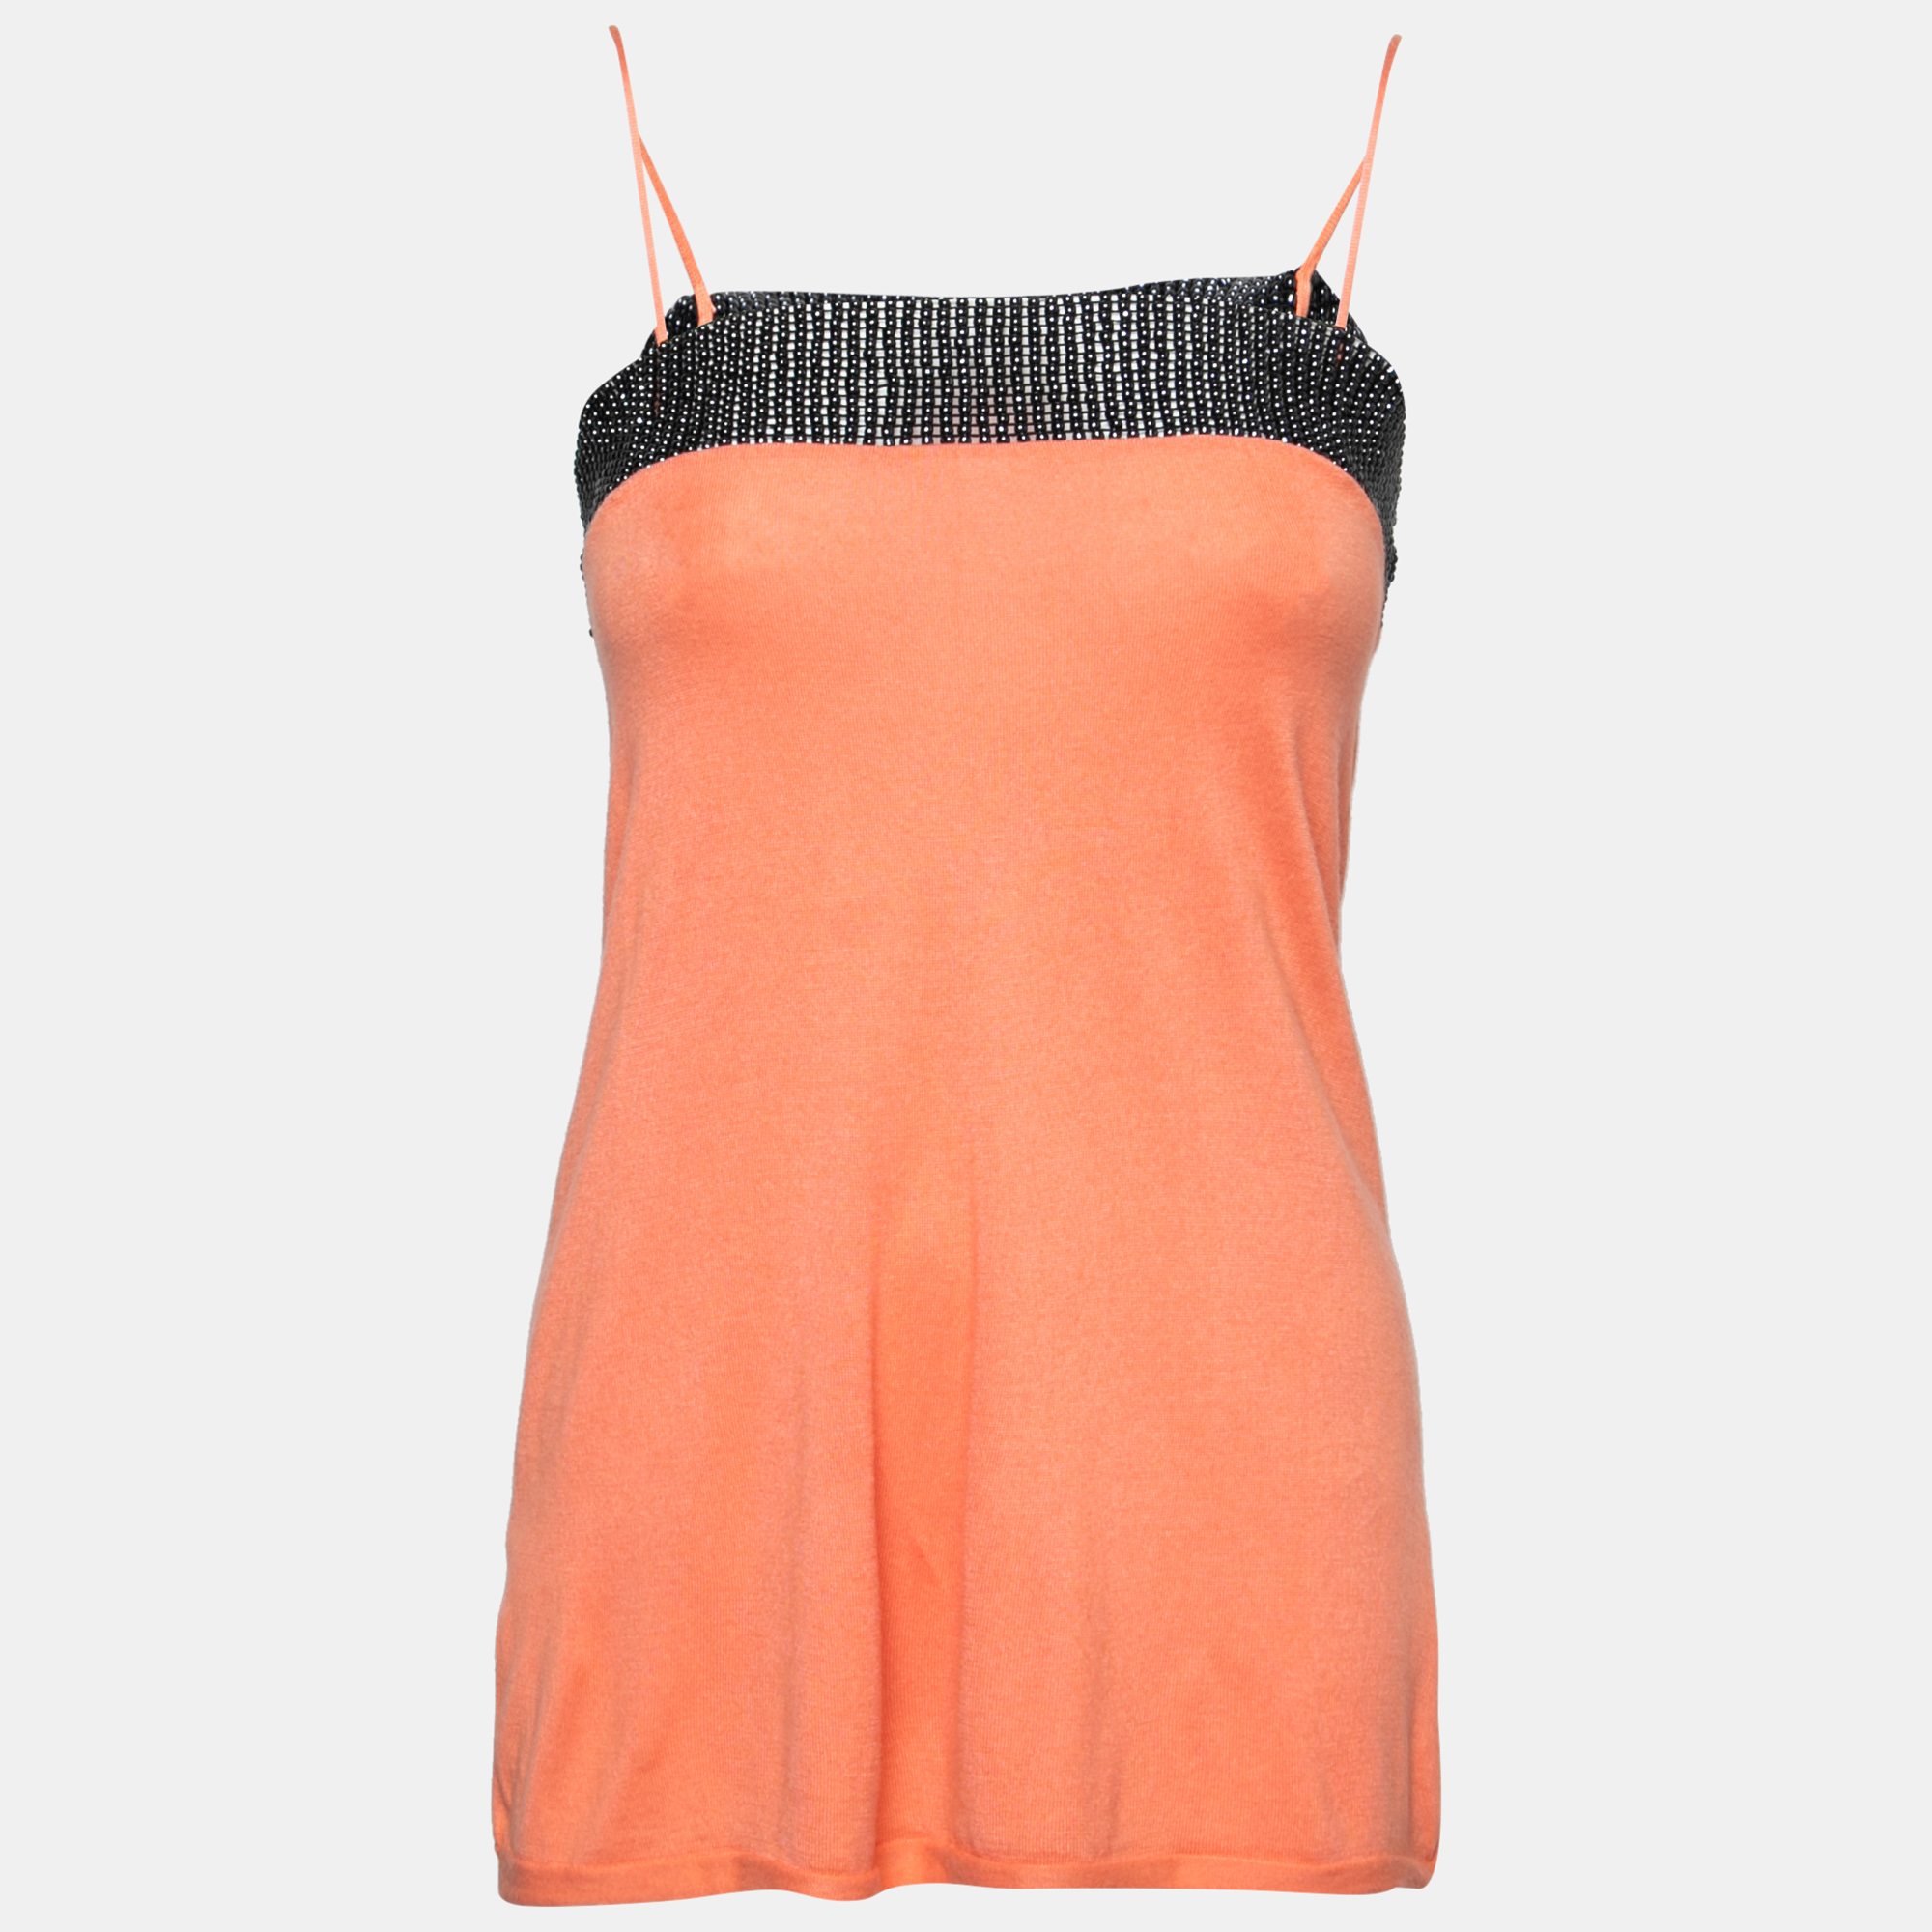 Emporio armani orange beaded detail sleeveless knit top s